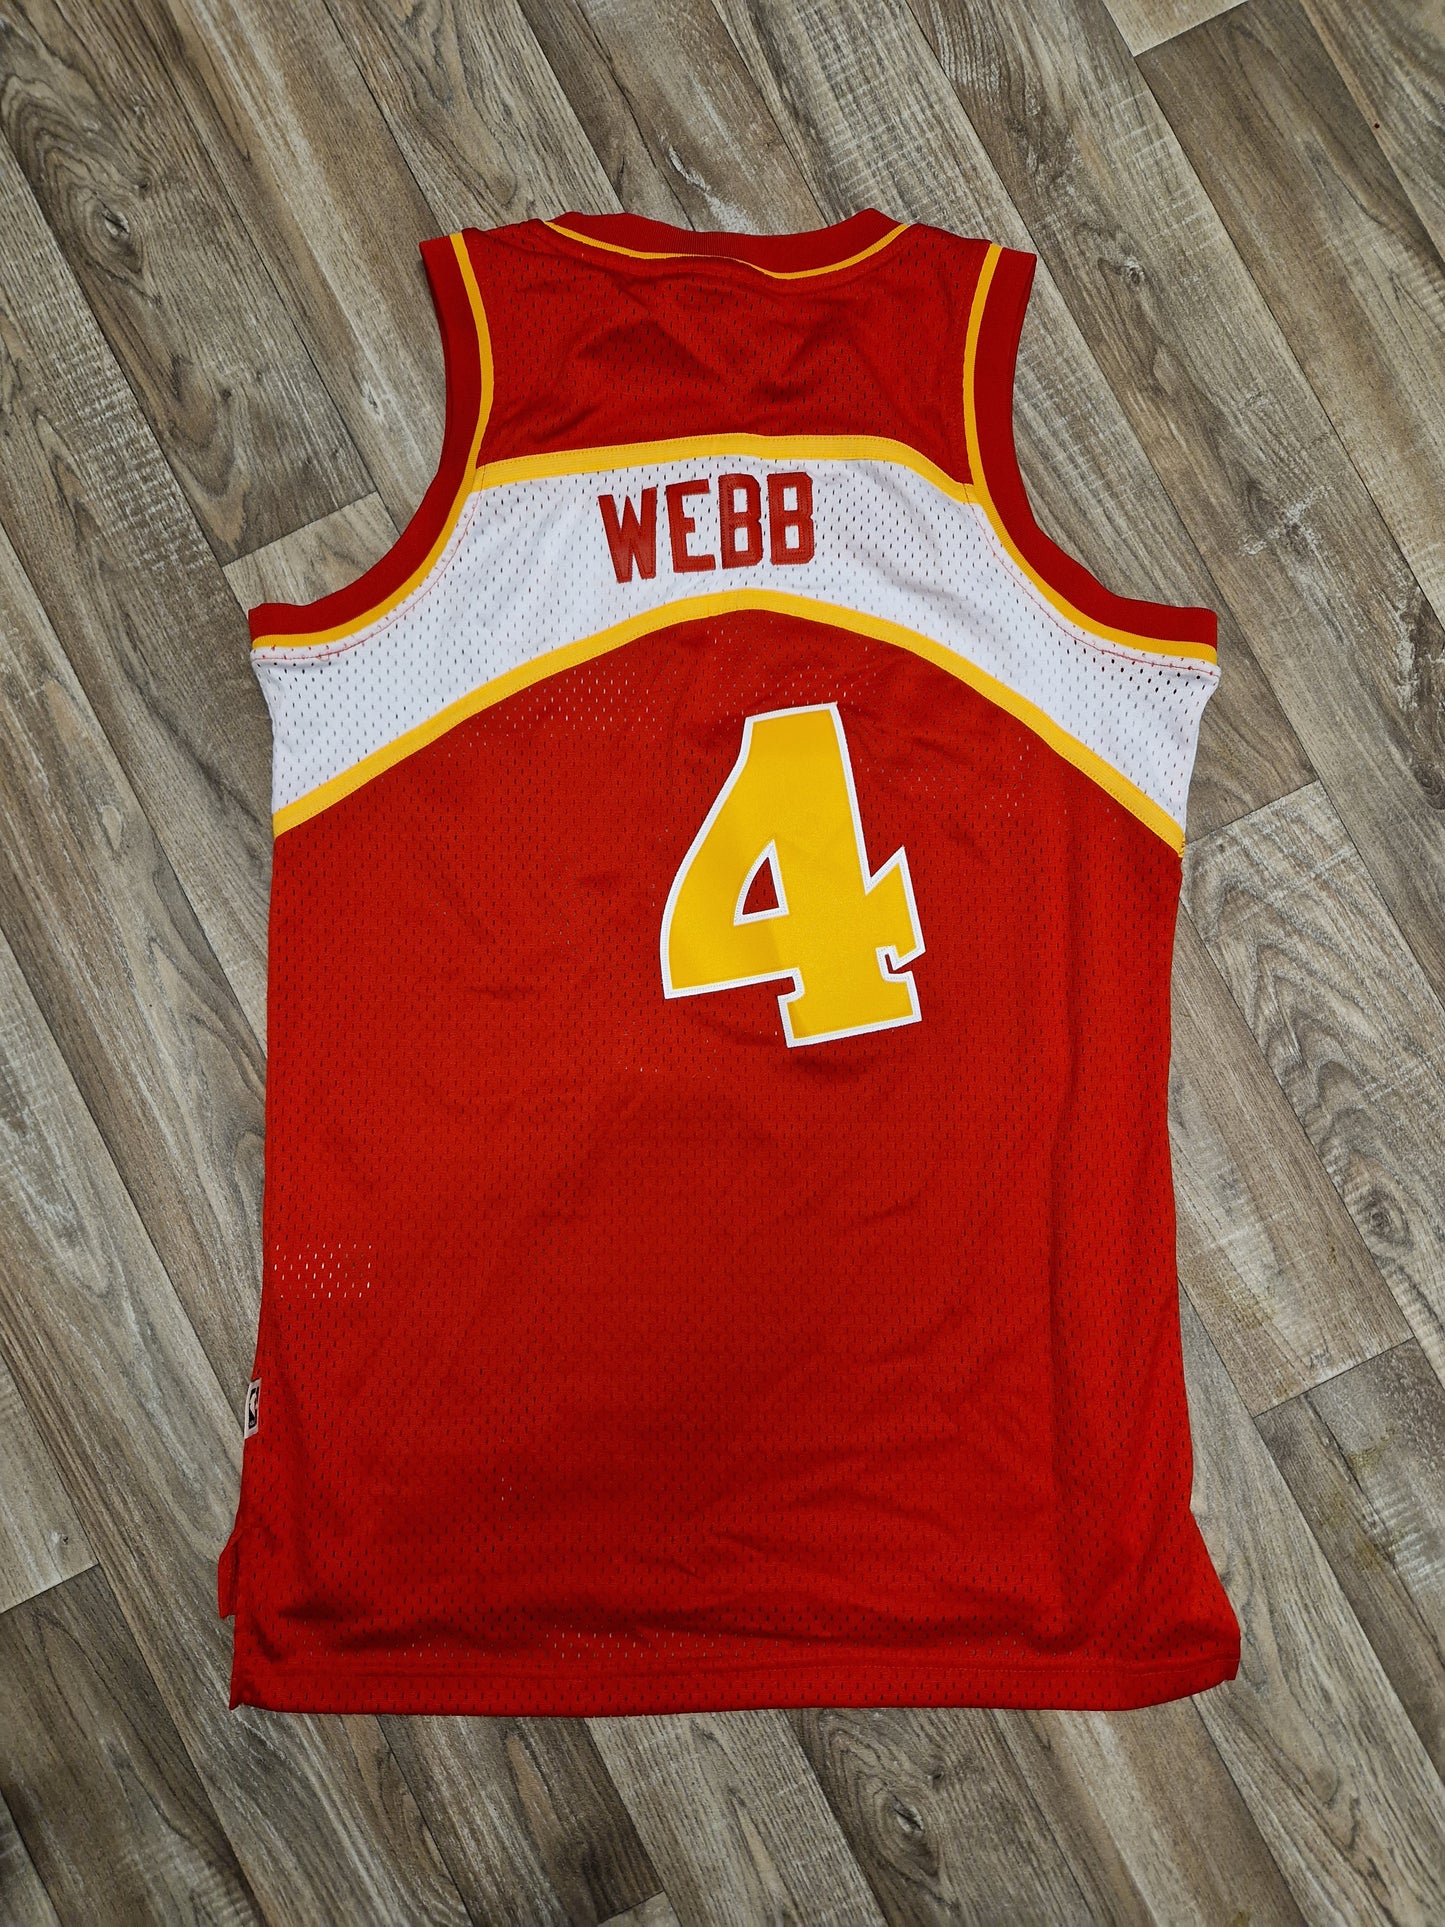 Spud Webb Atlanta Hawks Jersey Size Small